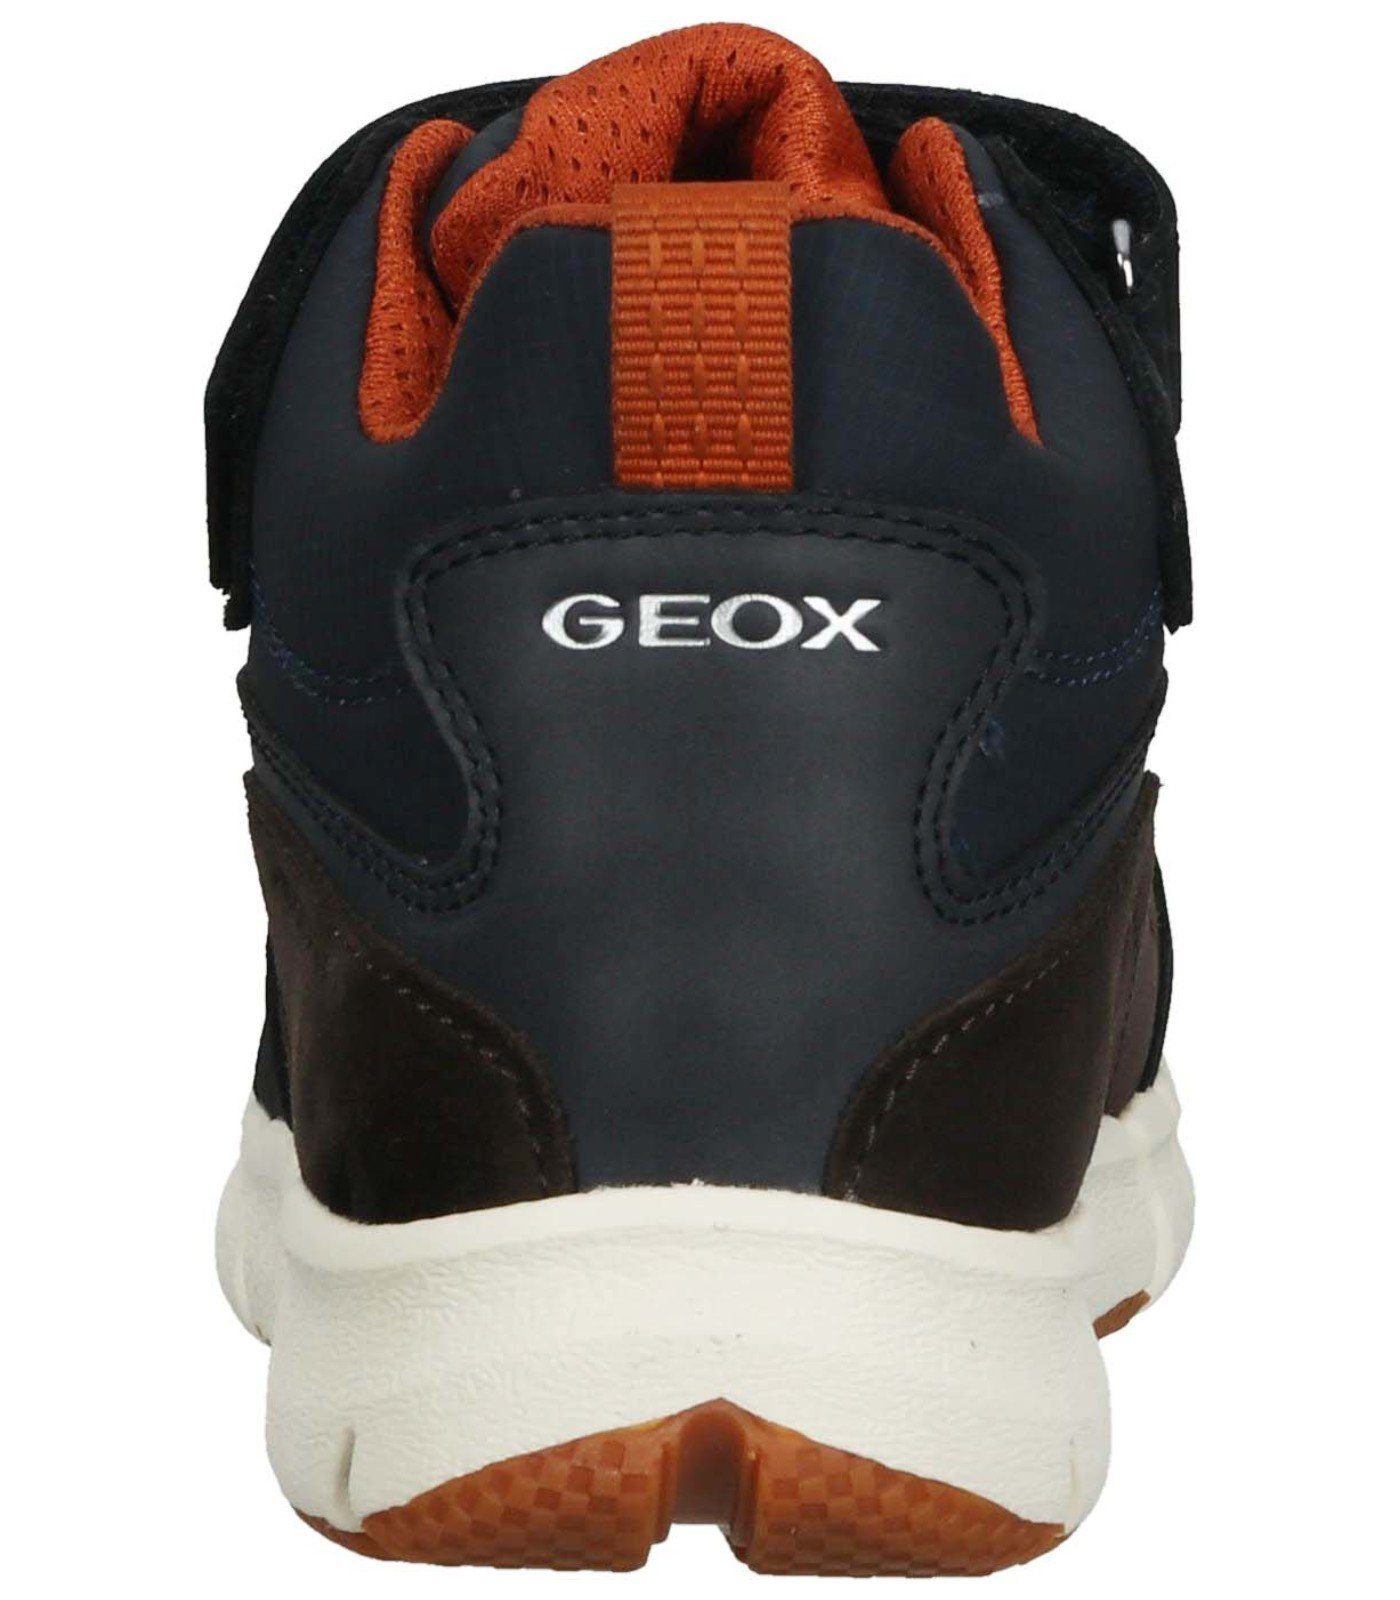 Geox Stiefelette Leder/Textil Schnürstiefelette Braun Orange